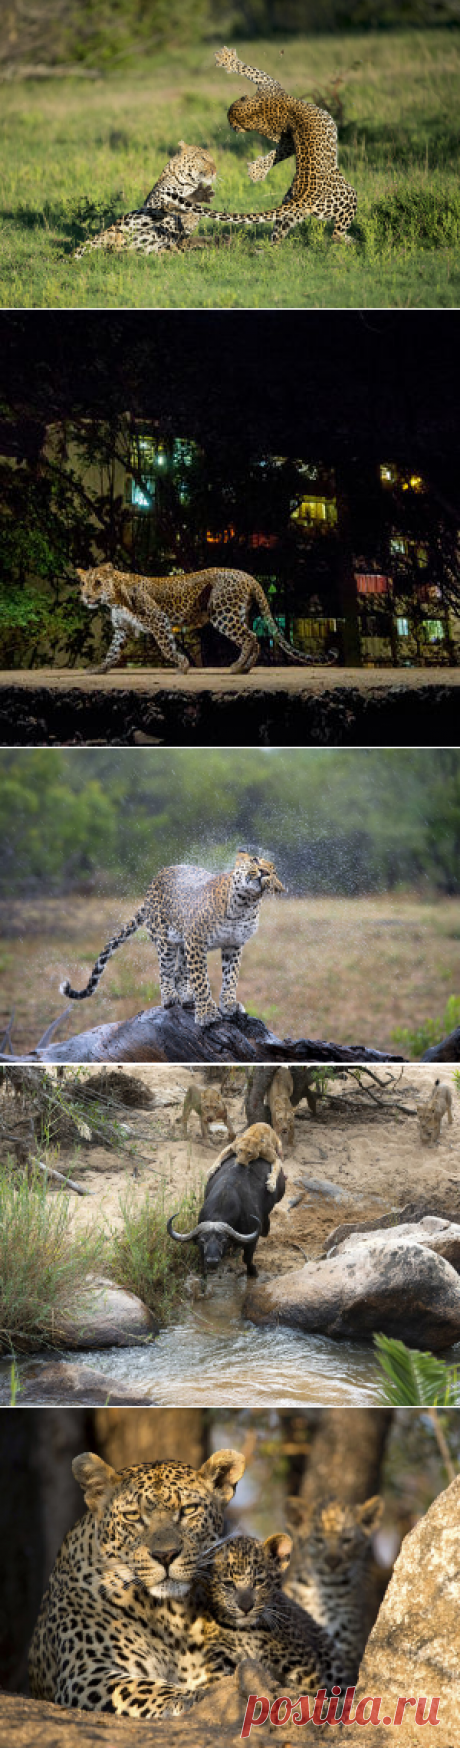 Южная Африка: земля леопарда — National Geographic Россия Резерват Саби-Сэнд стал домом для представителей всей африканской &laquo;большой пятерки&raquo;: слонов, львов, носорогов, буйволов и моих любимых фотомоделей &mdash; леопардов